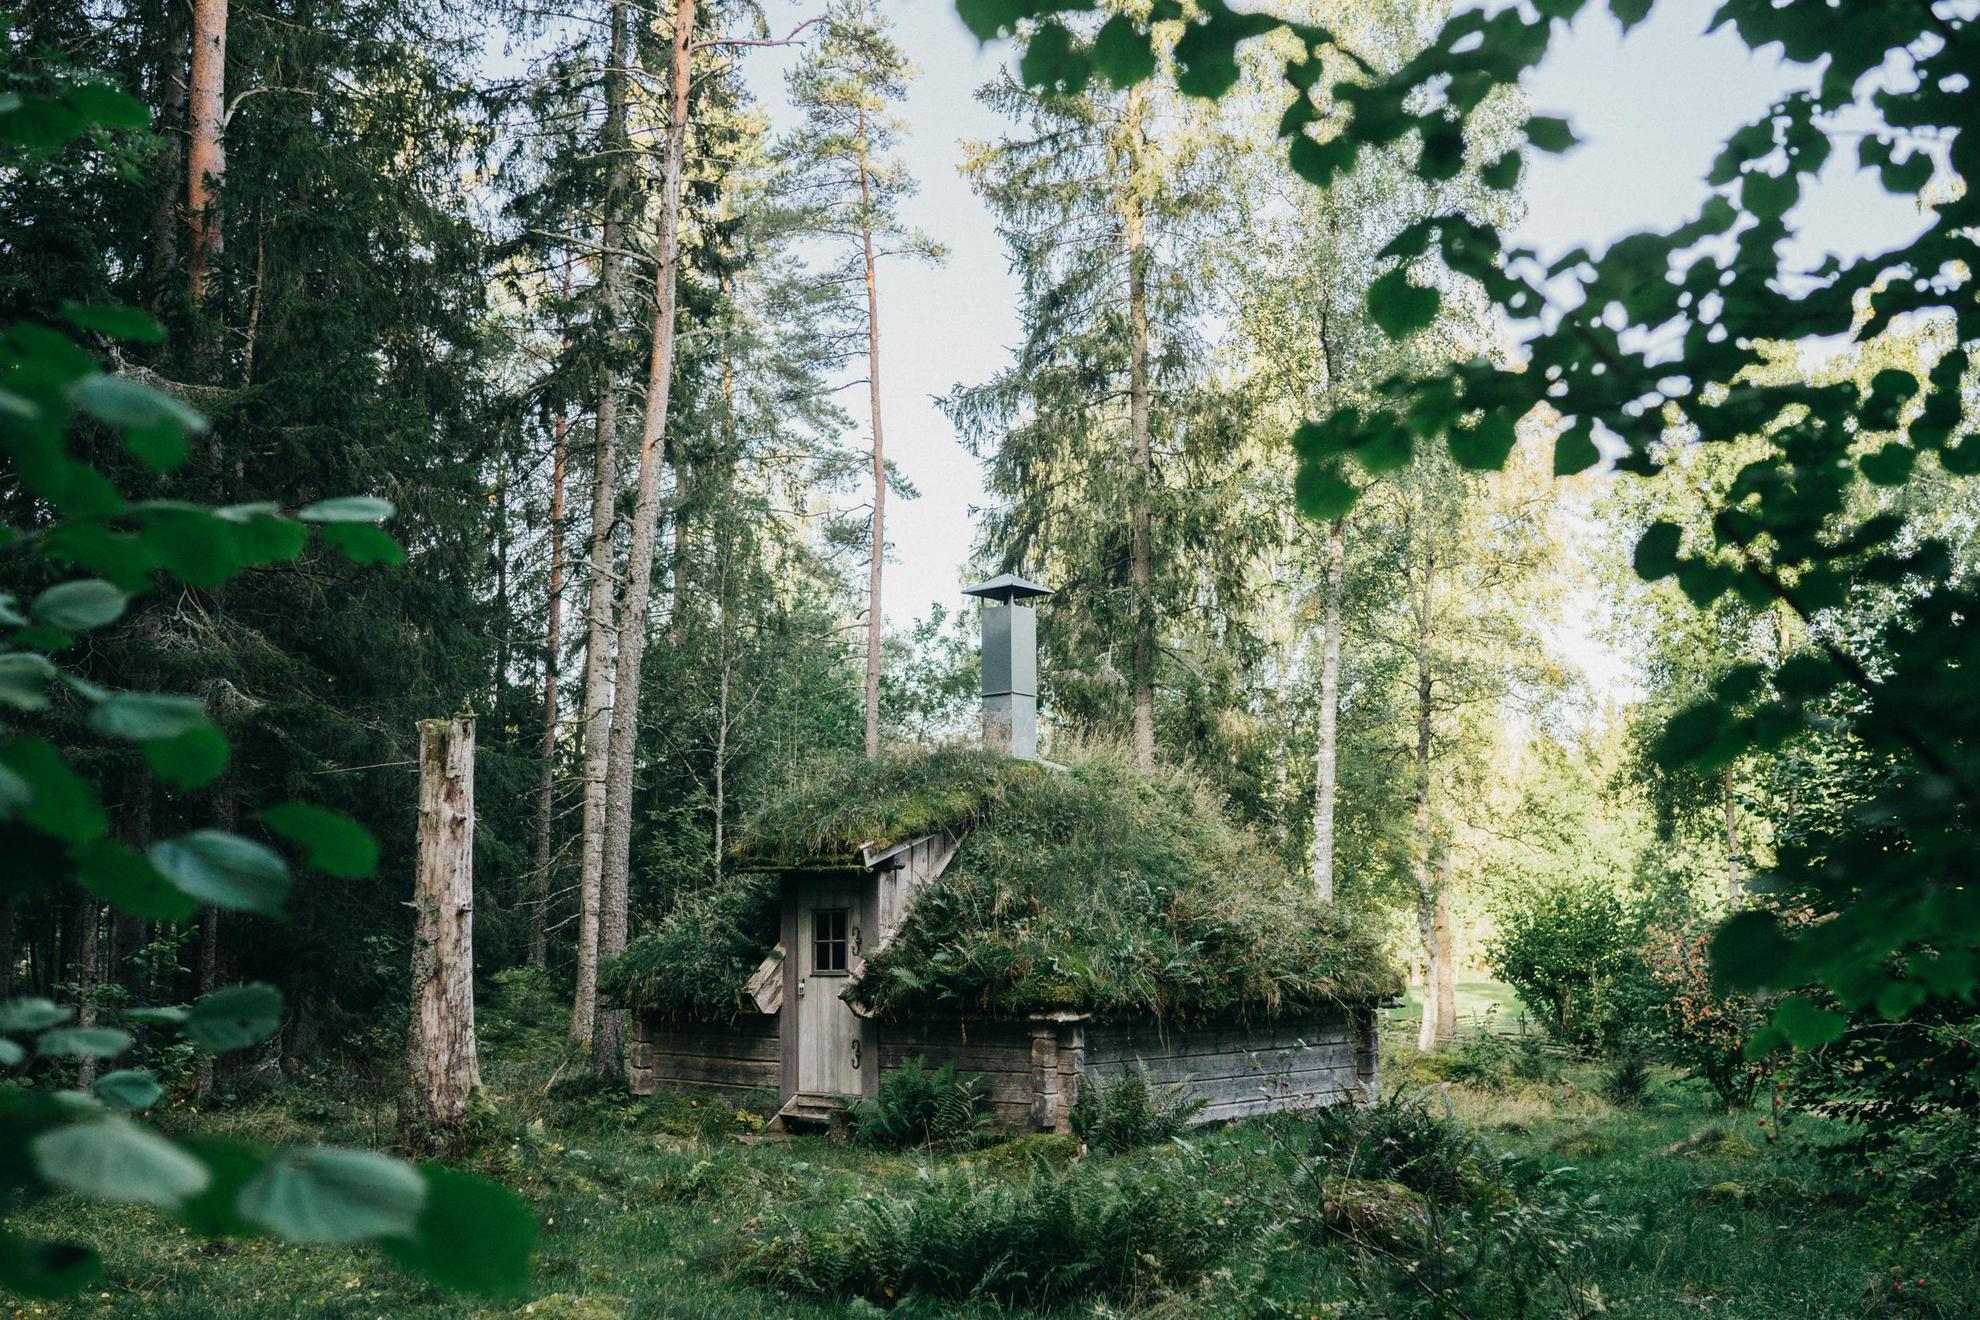 Un petit cottage en bois dans une forêt par une journée d'été. Le toit est recouvert de mousse et de fougères.